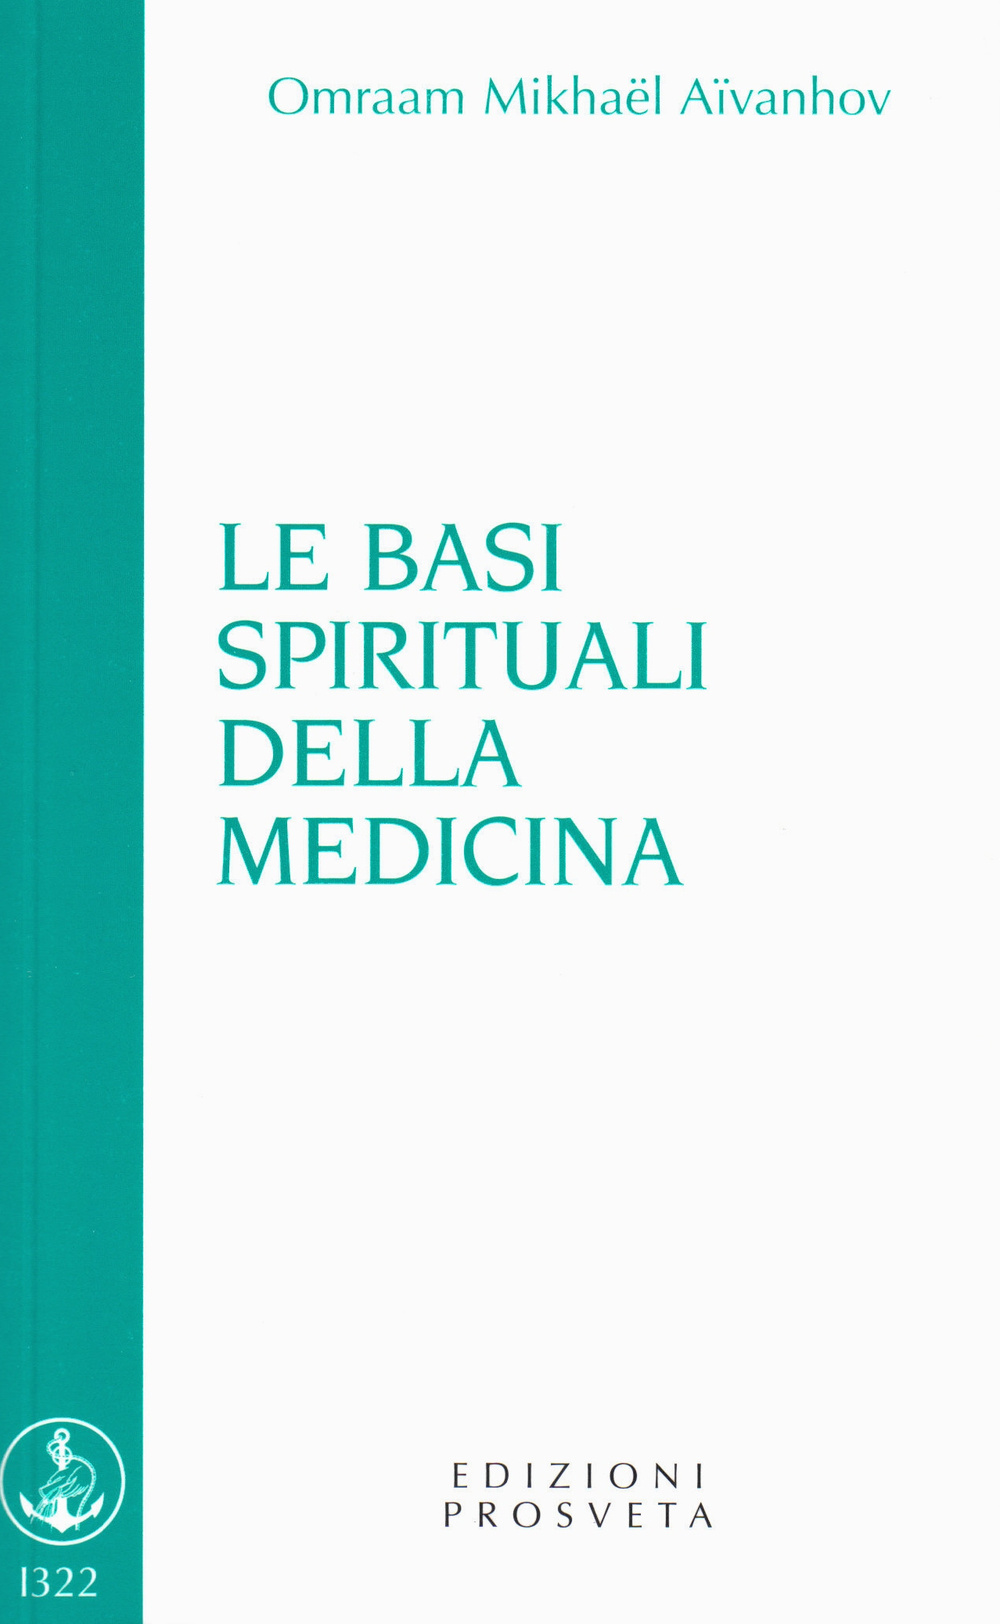 Image of Le basi spirituali della medicina